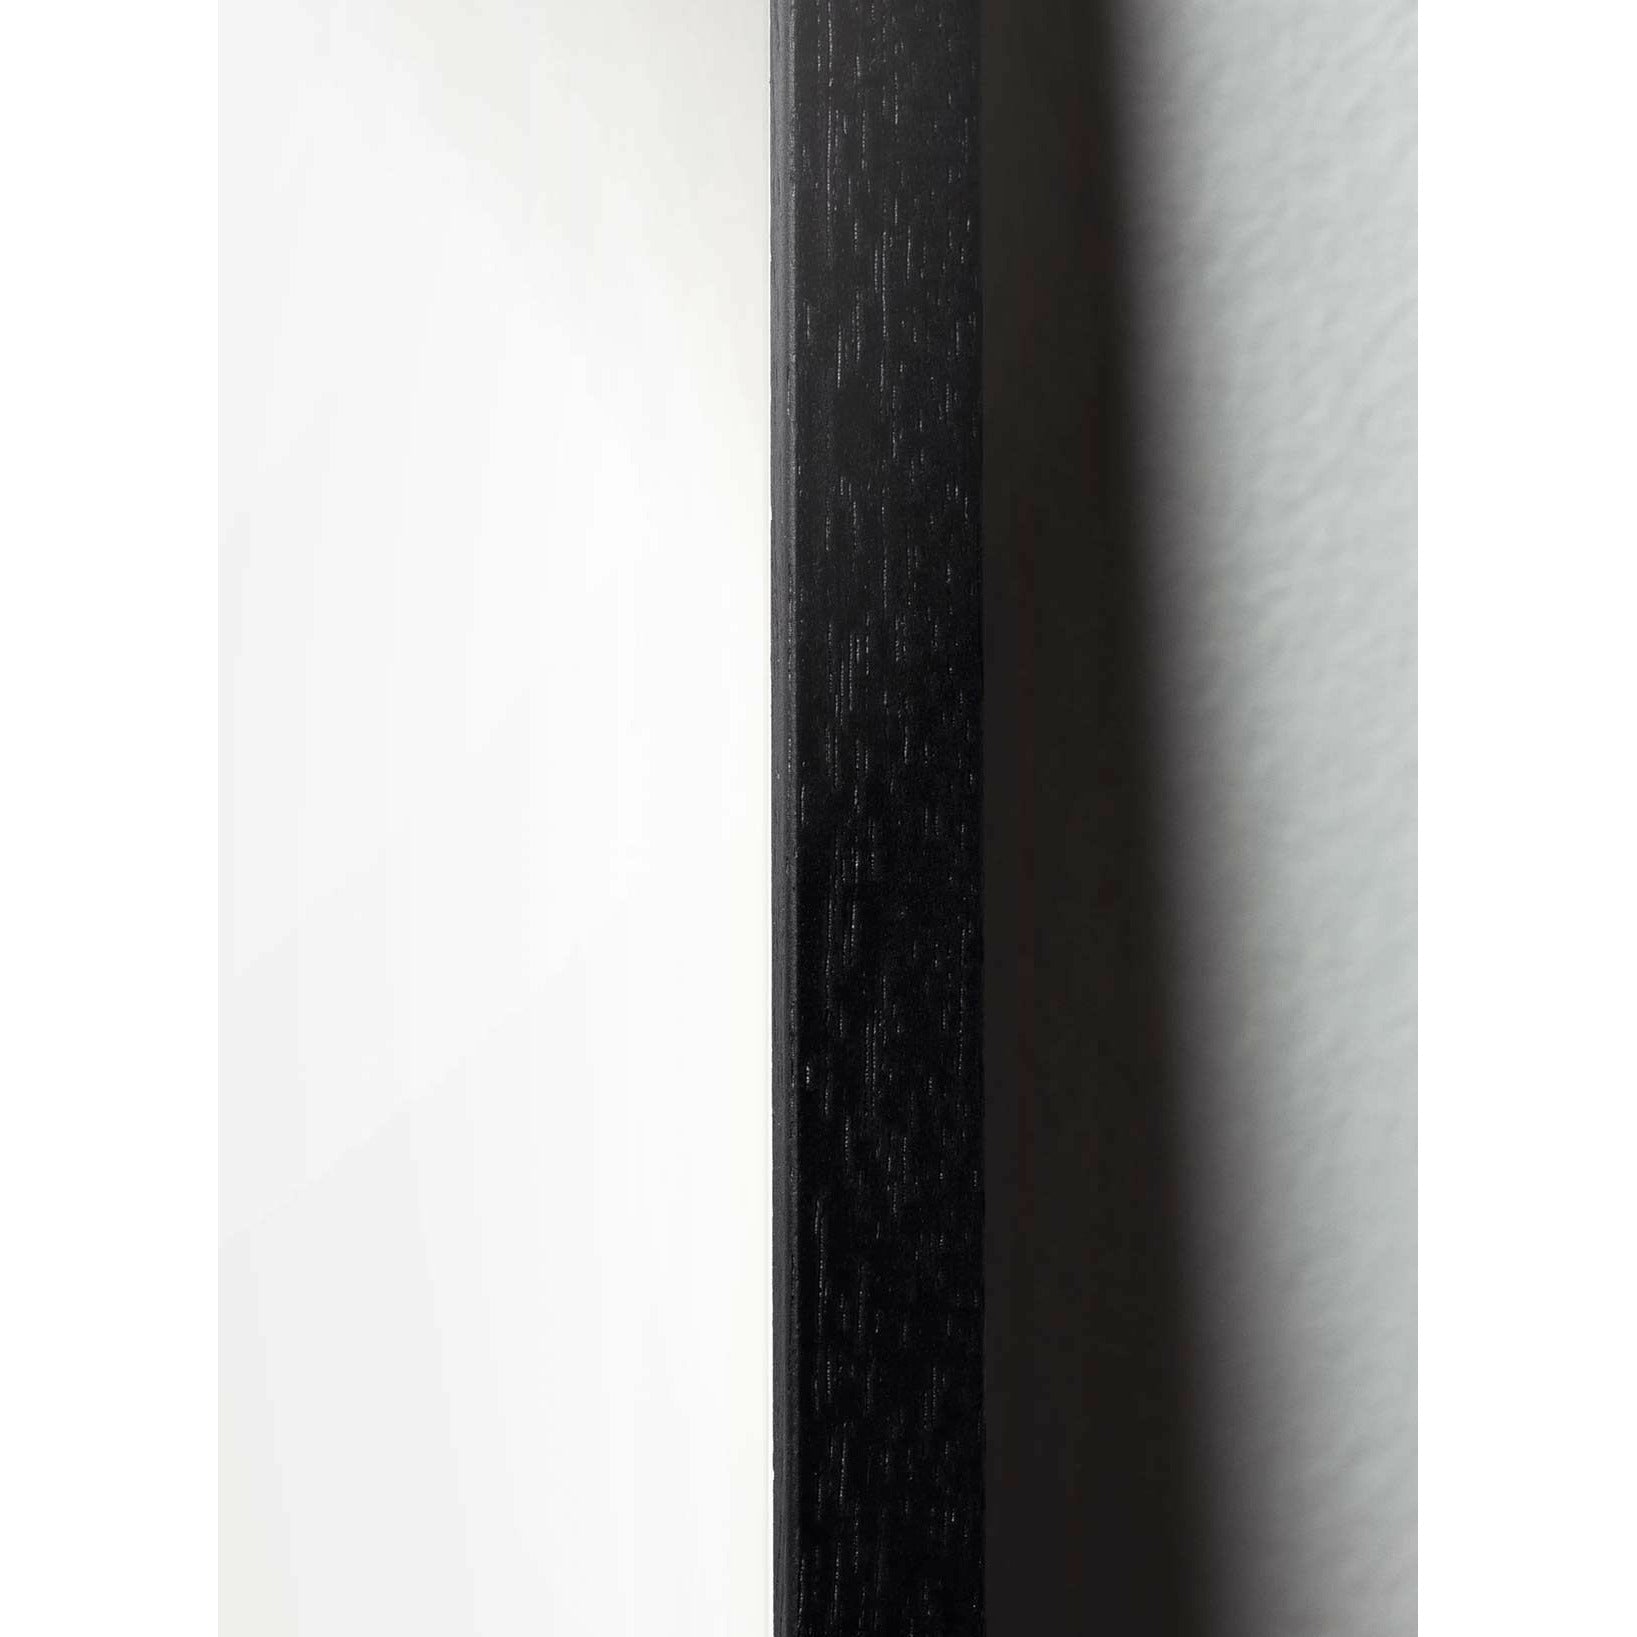 Brainchild Egg Cross Format Poster, Frame In Black Lacquered Wood 50x70 Cm, Black